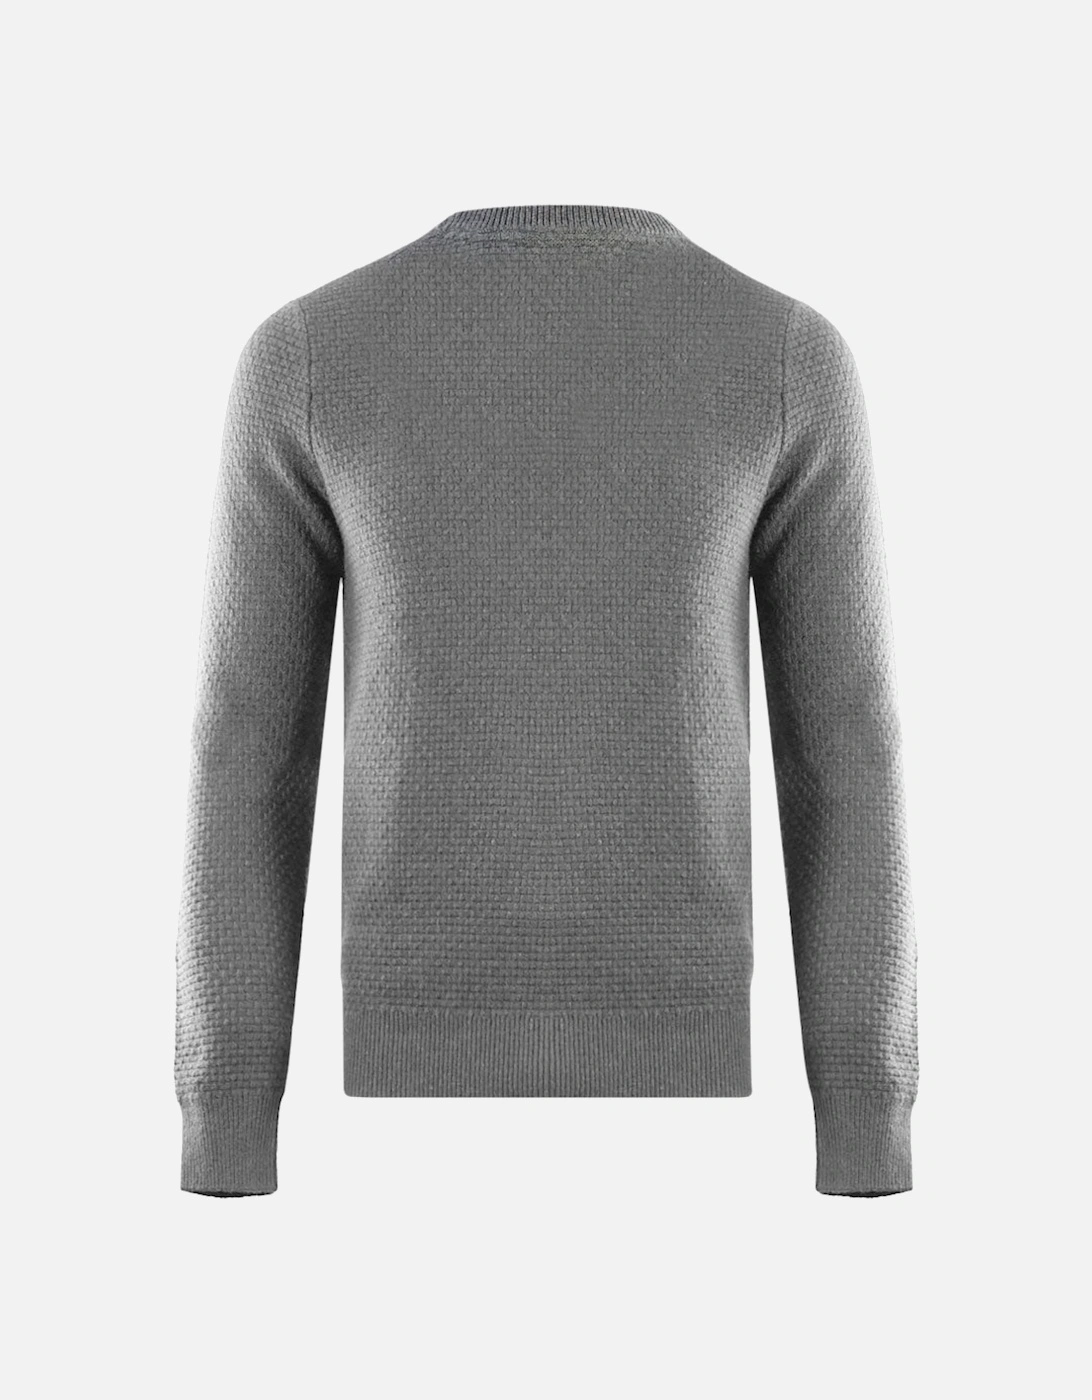 Lyle & Scott Basket Weave Knitted Grey Sweater